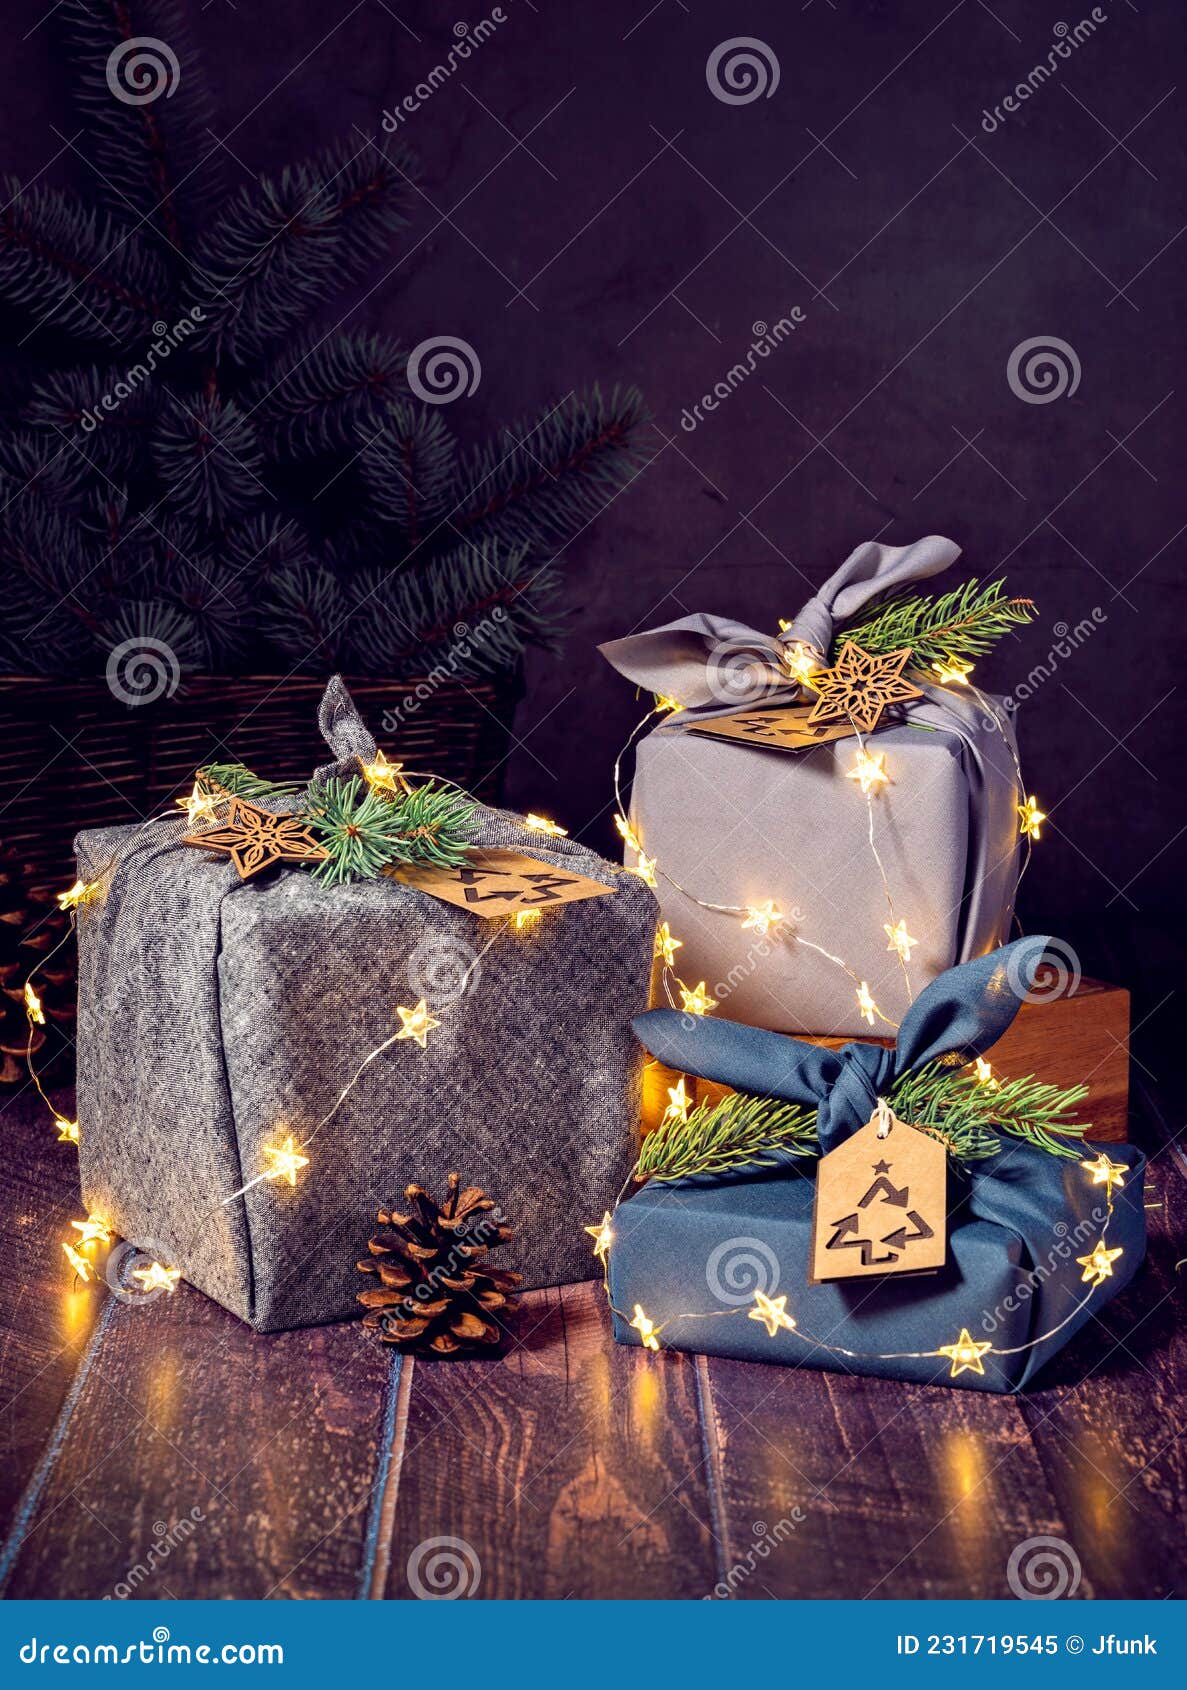 Niente Sprechi Di Regali Di Natale in Stile Furoshki Ecofriendamente  Sostenibile Immagine Stock - Immagine di copia, festivo: 231719545